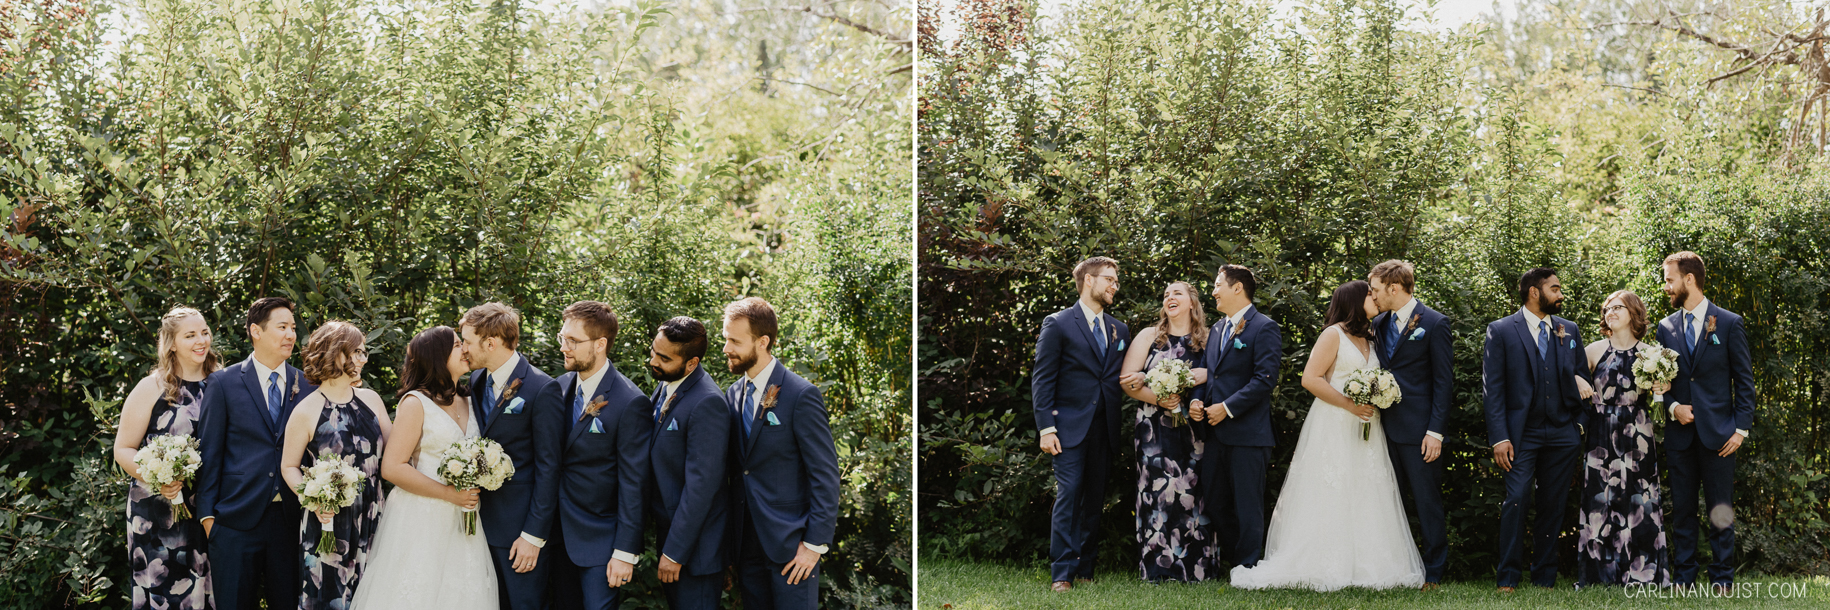 Fun Bridal Party Photos | Calgary Wedding Photographer 